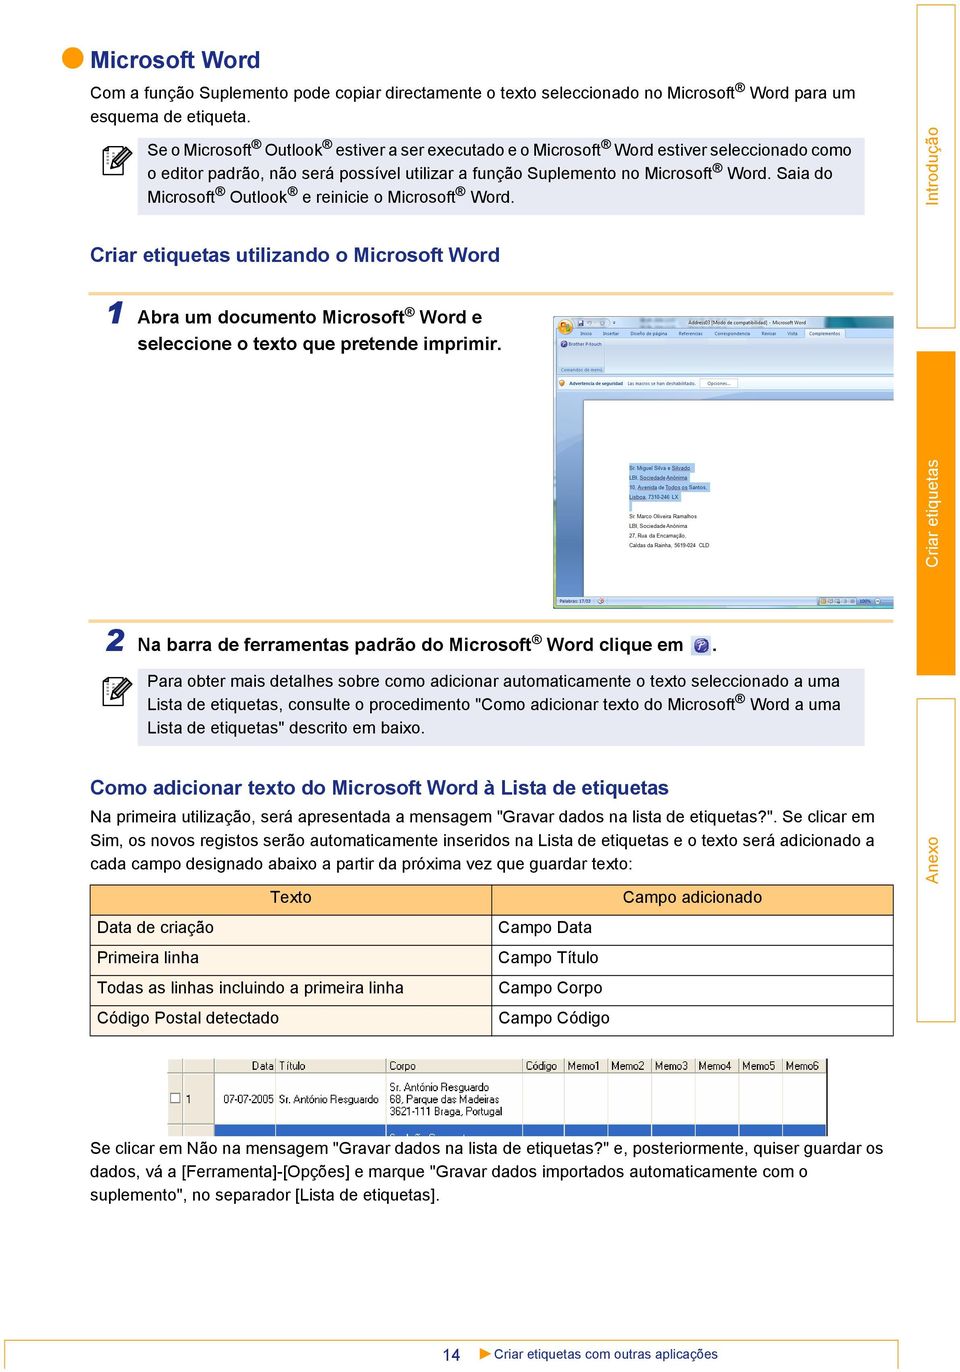 Saia do Microsoft Outlook e reinicie o Microsoft Word. utilizando o Microsoft Word 1 Abra um documento Microsoft Word e seleccione o texto que pretende imprimir.